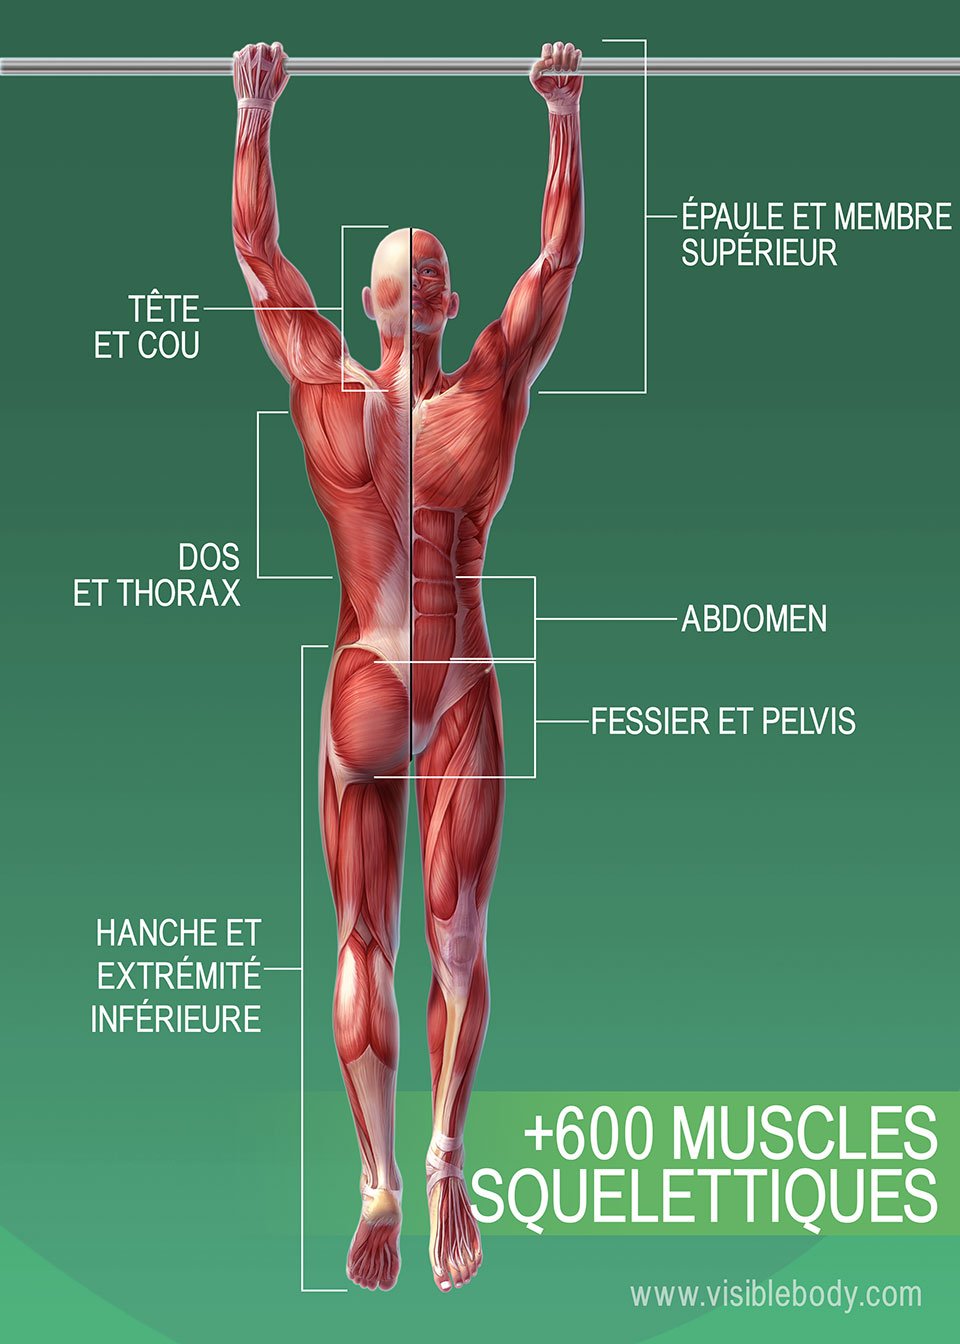 le graphique montre les muscles du corps humain avec leurs noms